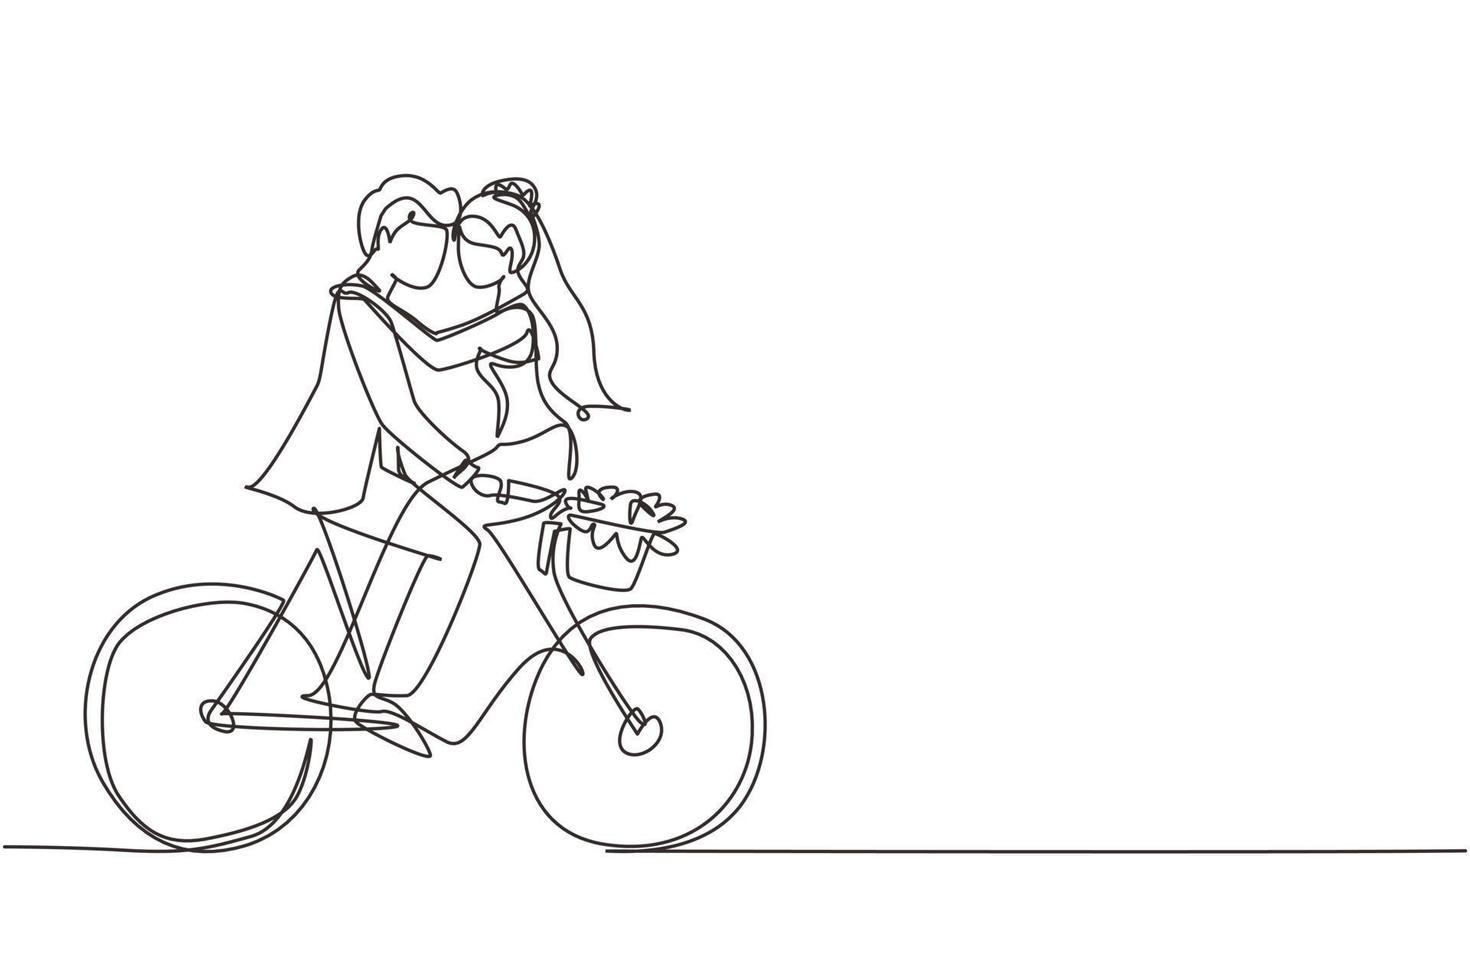 dibujo continuo de una línea hombre y mujer casados felices montando bicicleta cara a cara en el día de la boda. linda pareja romántica está montando bicicleta juntos. ilustración gráfica de vector de diseño de dibujo de una sola línea